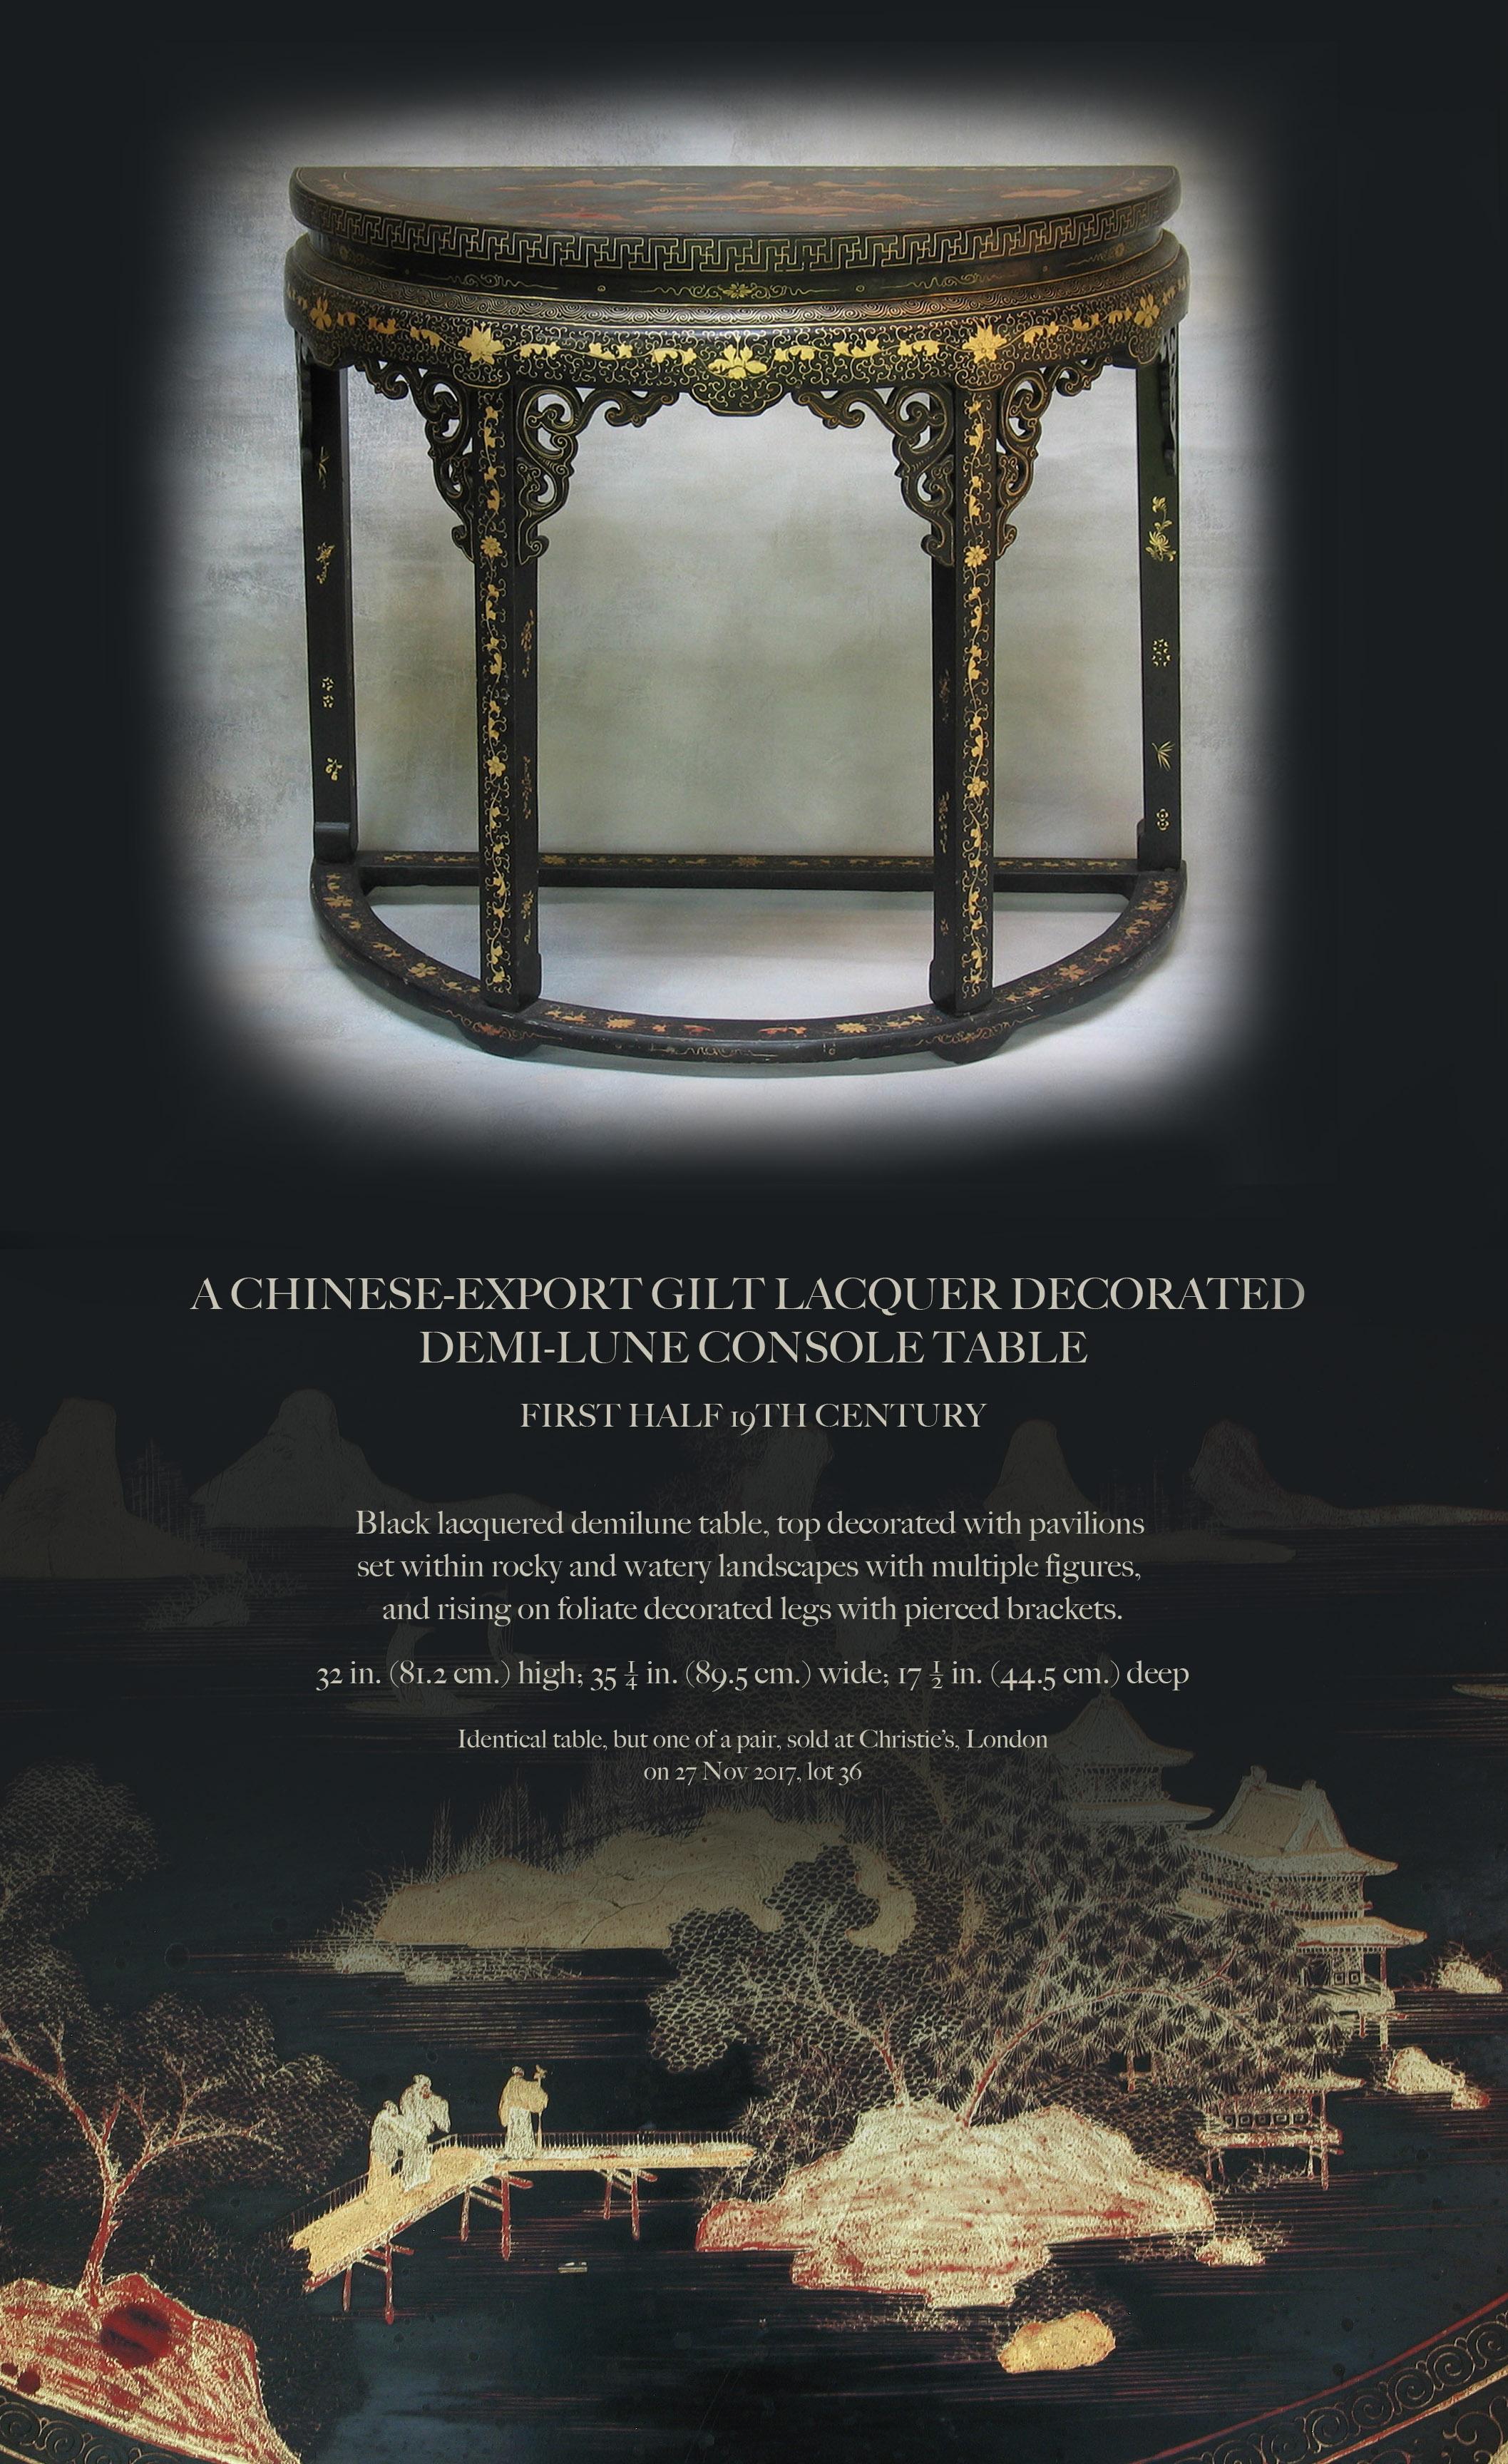 Ein chinesischer Export-Goldlack verziert 
Demi-lune Konsolentisch

Erste Hälfte 19. Jahrhundert.


Schwarz lackierter Demilunentisch, Platte mit Pavillons verziert 
in felsigen und wässrigen Landschaften mit zahlreichen Figuren, 
und steht